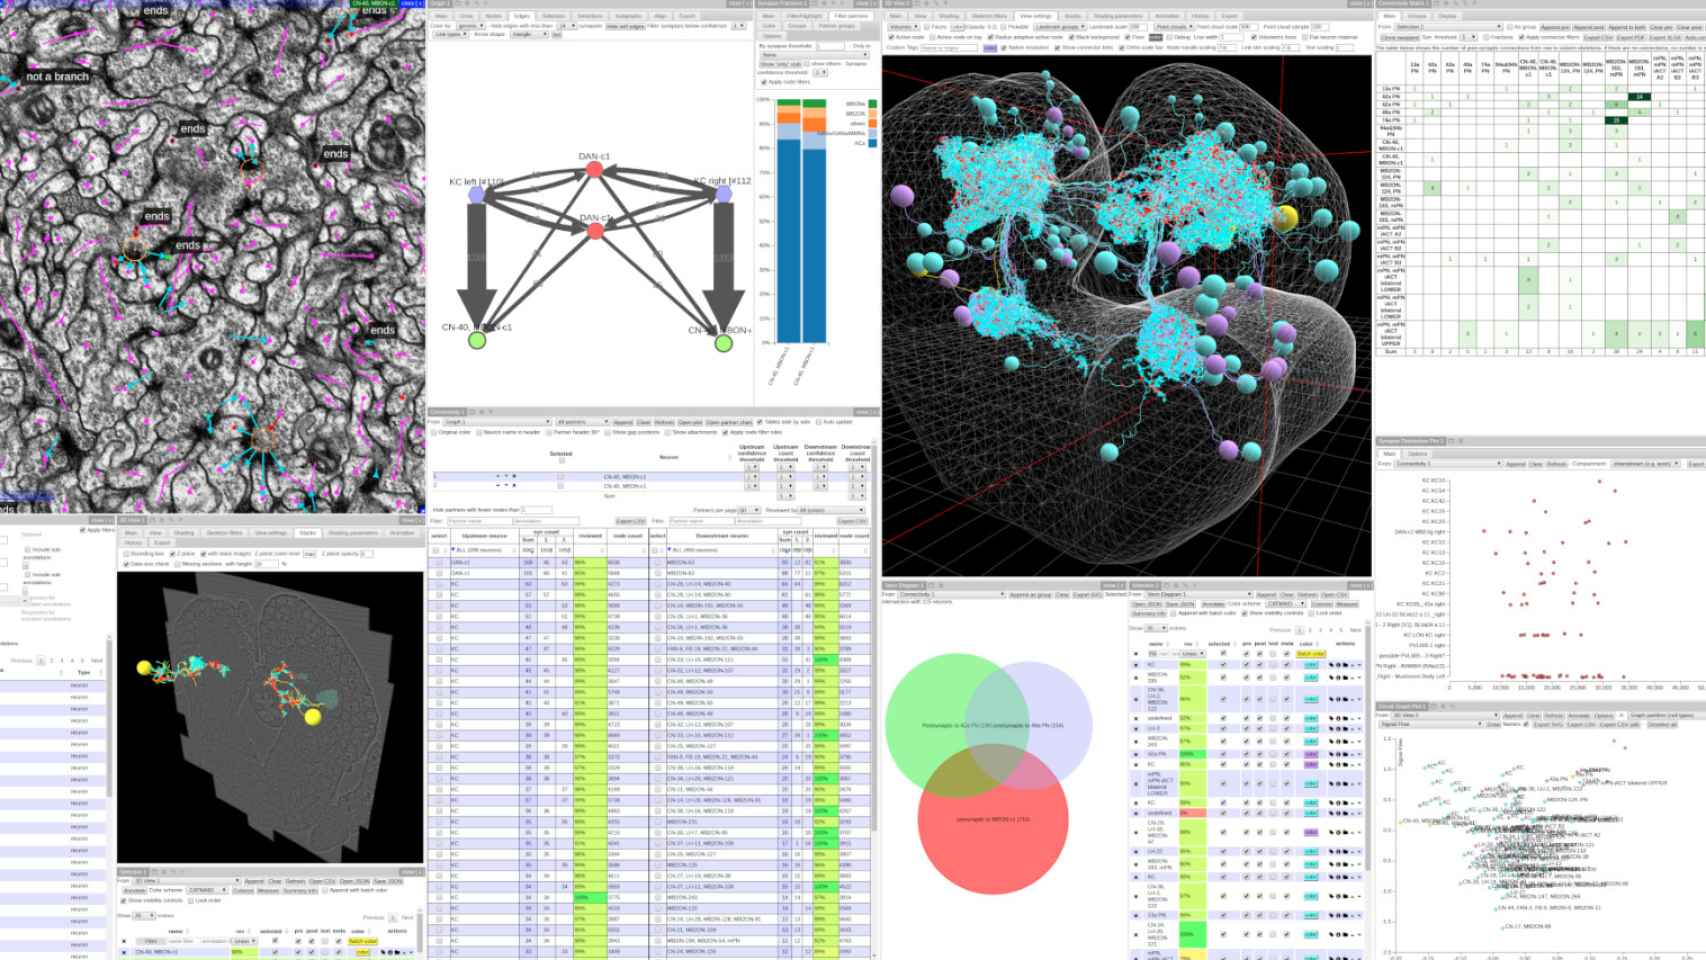 Captura de pantalla del software CATMAID, que muestra imágenes de microscopía electrónica, neuronas en 3D, diagramas de conexiones sinápticas, tabla y varios análisis relacionados con la investigación